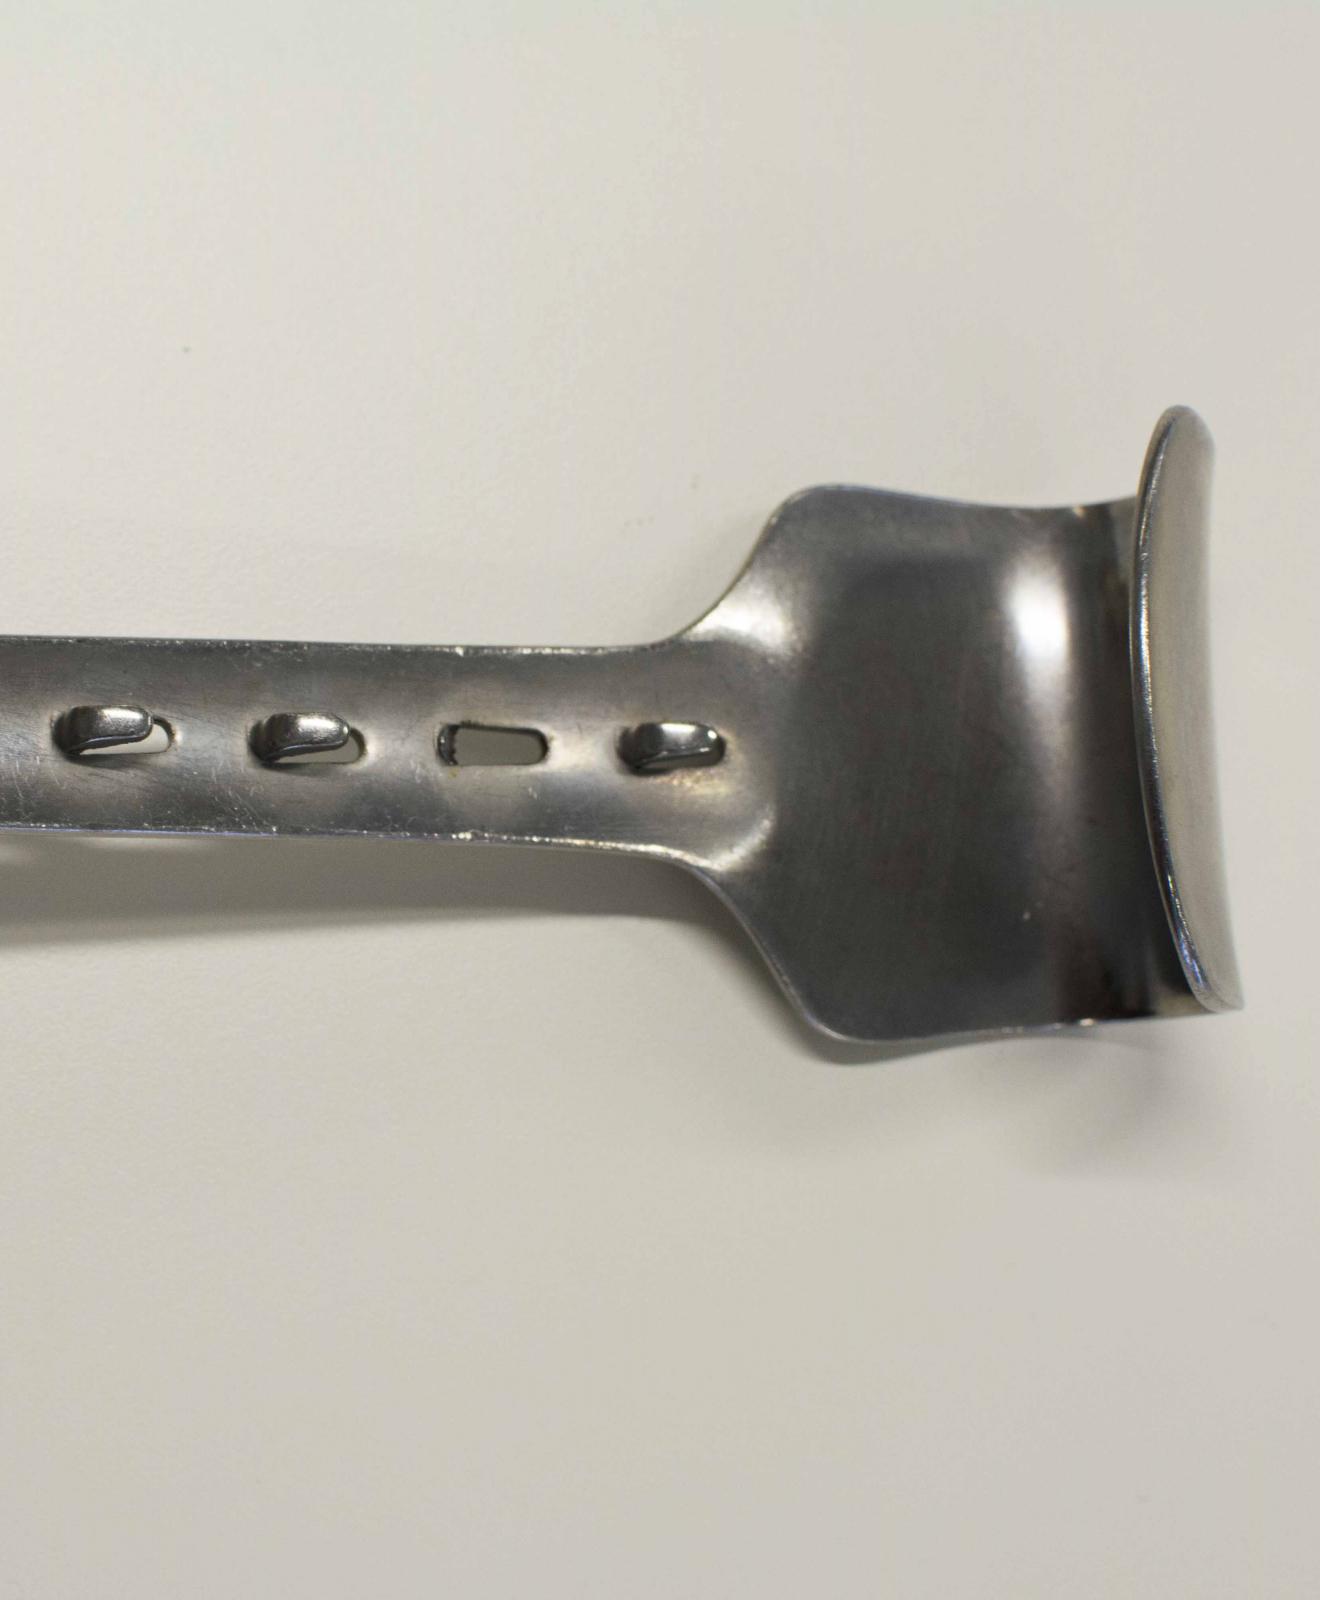 Instrumento metálico con forma de espátula, con el eje transversal perforado, un extremo convexo y otro cóncavo